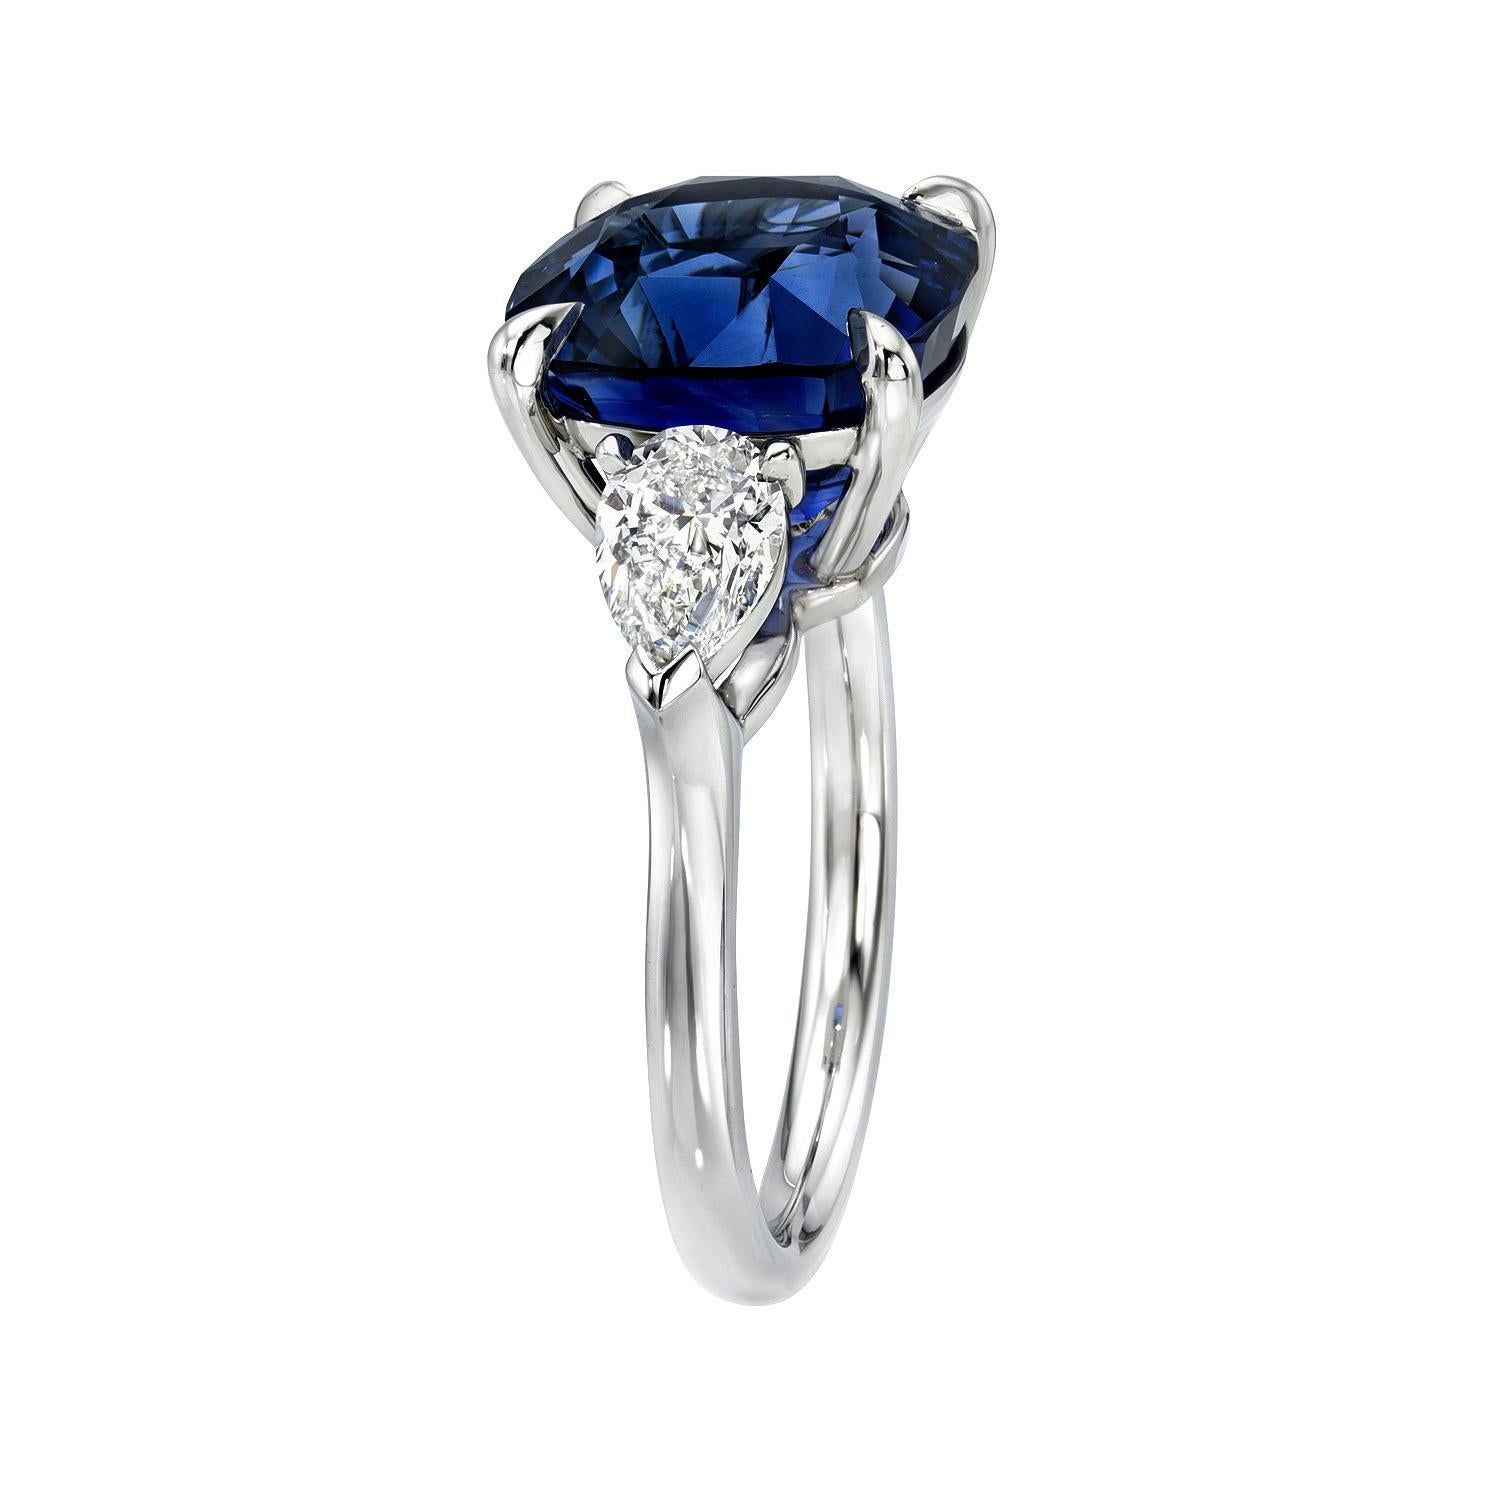 Beeindruckende 8,02 Karat Royal Blue Ceylon Sapphire Kissen, drei Stein Platin-Ring, flankiert von einem Paar von 1,00 Karat, E/VS1 Birne Form Diamanten.
Ring Größe 6. Die Größenänderung ist auf Anfrage möglich.
Die GIA-Gutachten für Edelsteine und